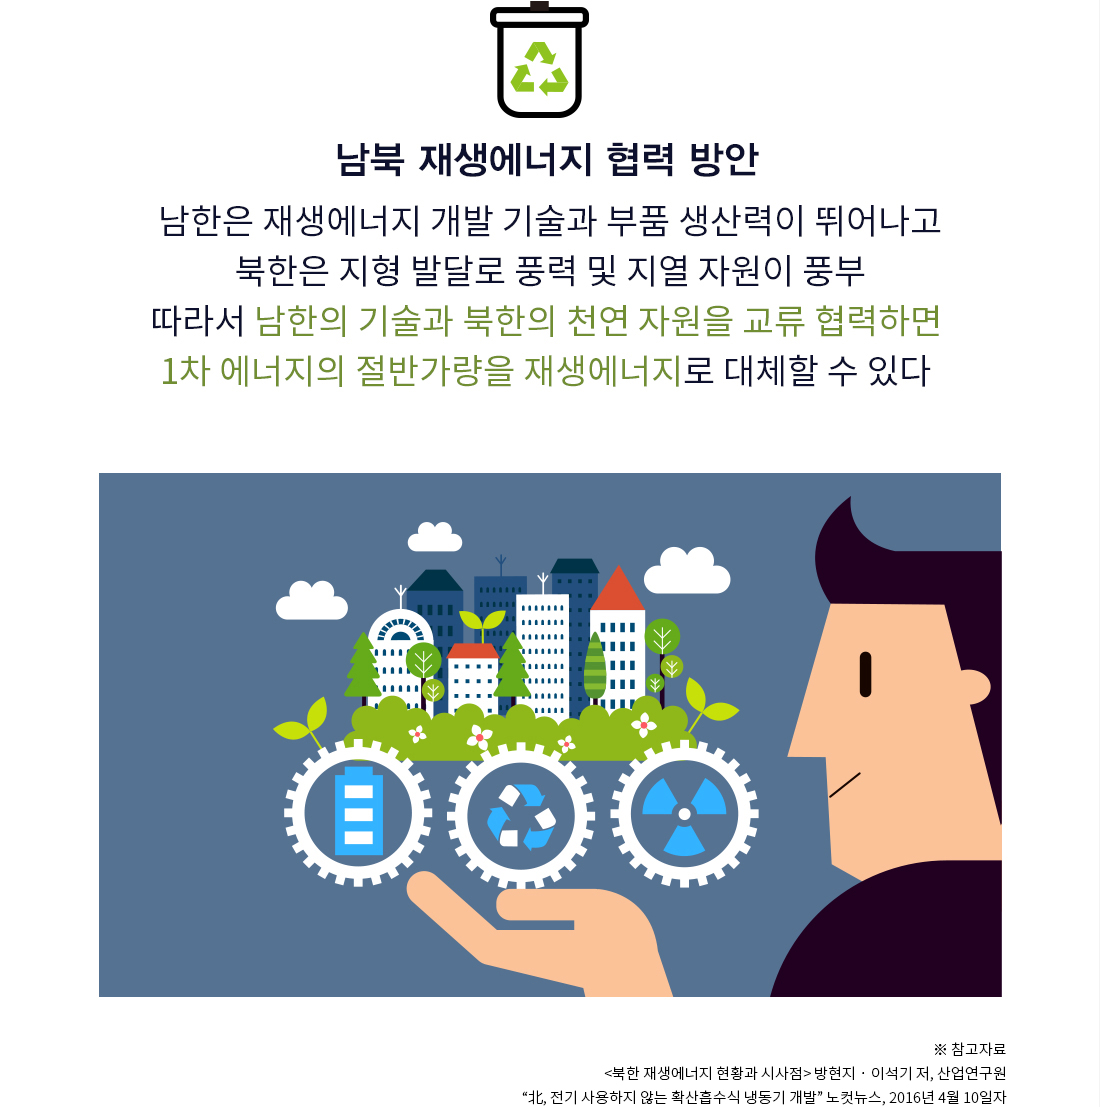 남북 재생에너지 협력 방안 남한은 재생에너지 개발 기술과 부품 생산력이 뛰어나고 북한은 지형 발달로 풍력 및 지열 자원이 풍부 따라서 남한의 기술과 북한의 천연 자원을 교류 협력하면 1차 에너지의 절반가량을 재생에너지로 대체할 수 있다 